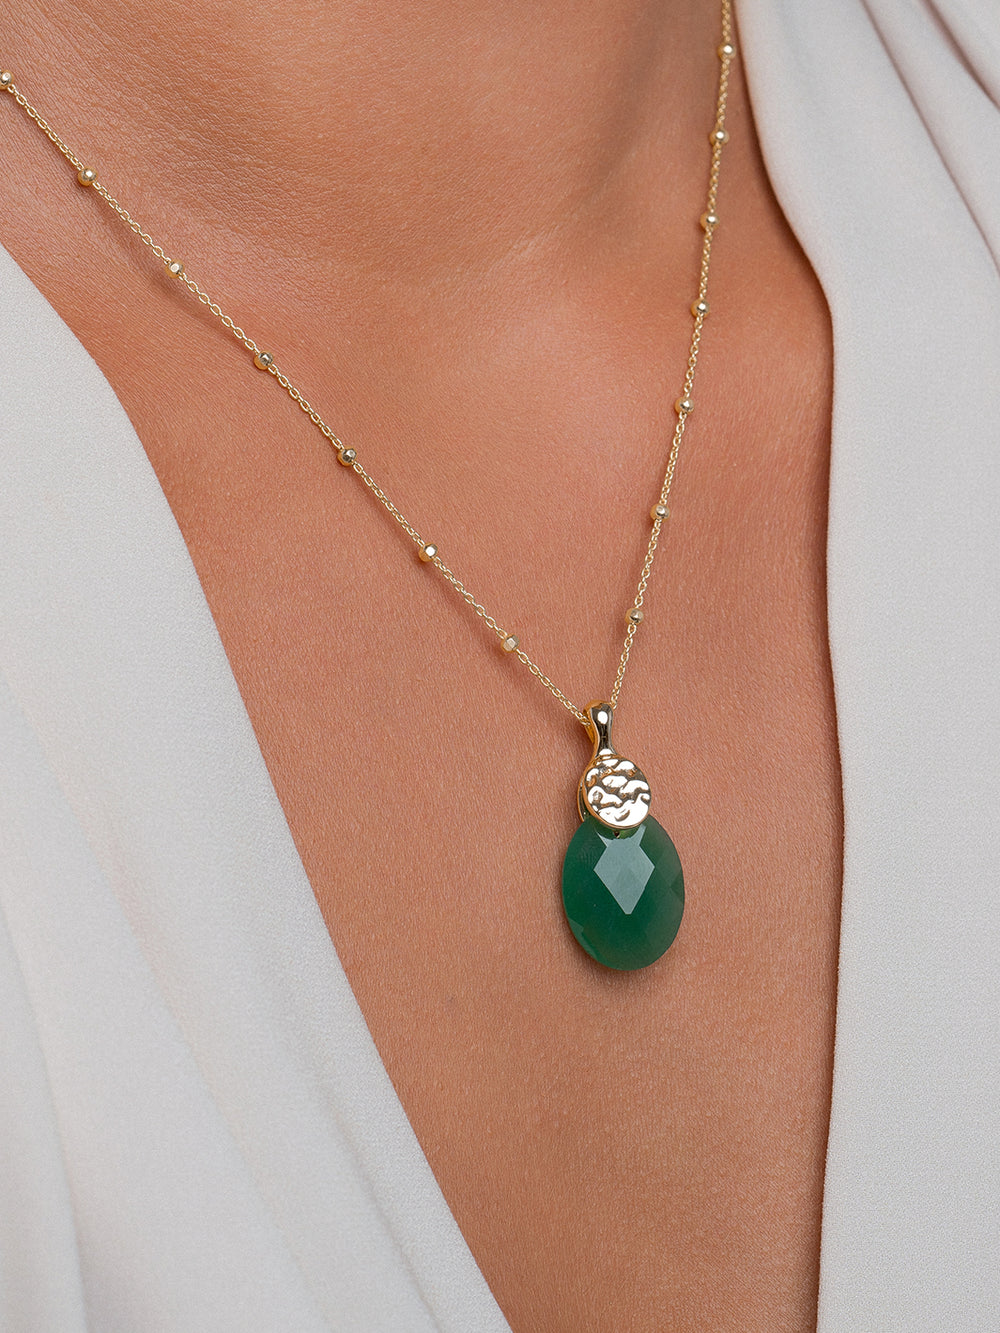 edelsteen sieraden met groene onyx van Sparkling Jewels